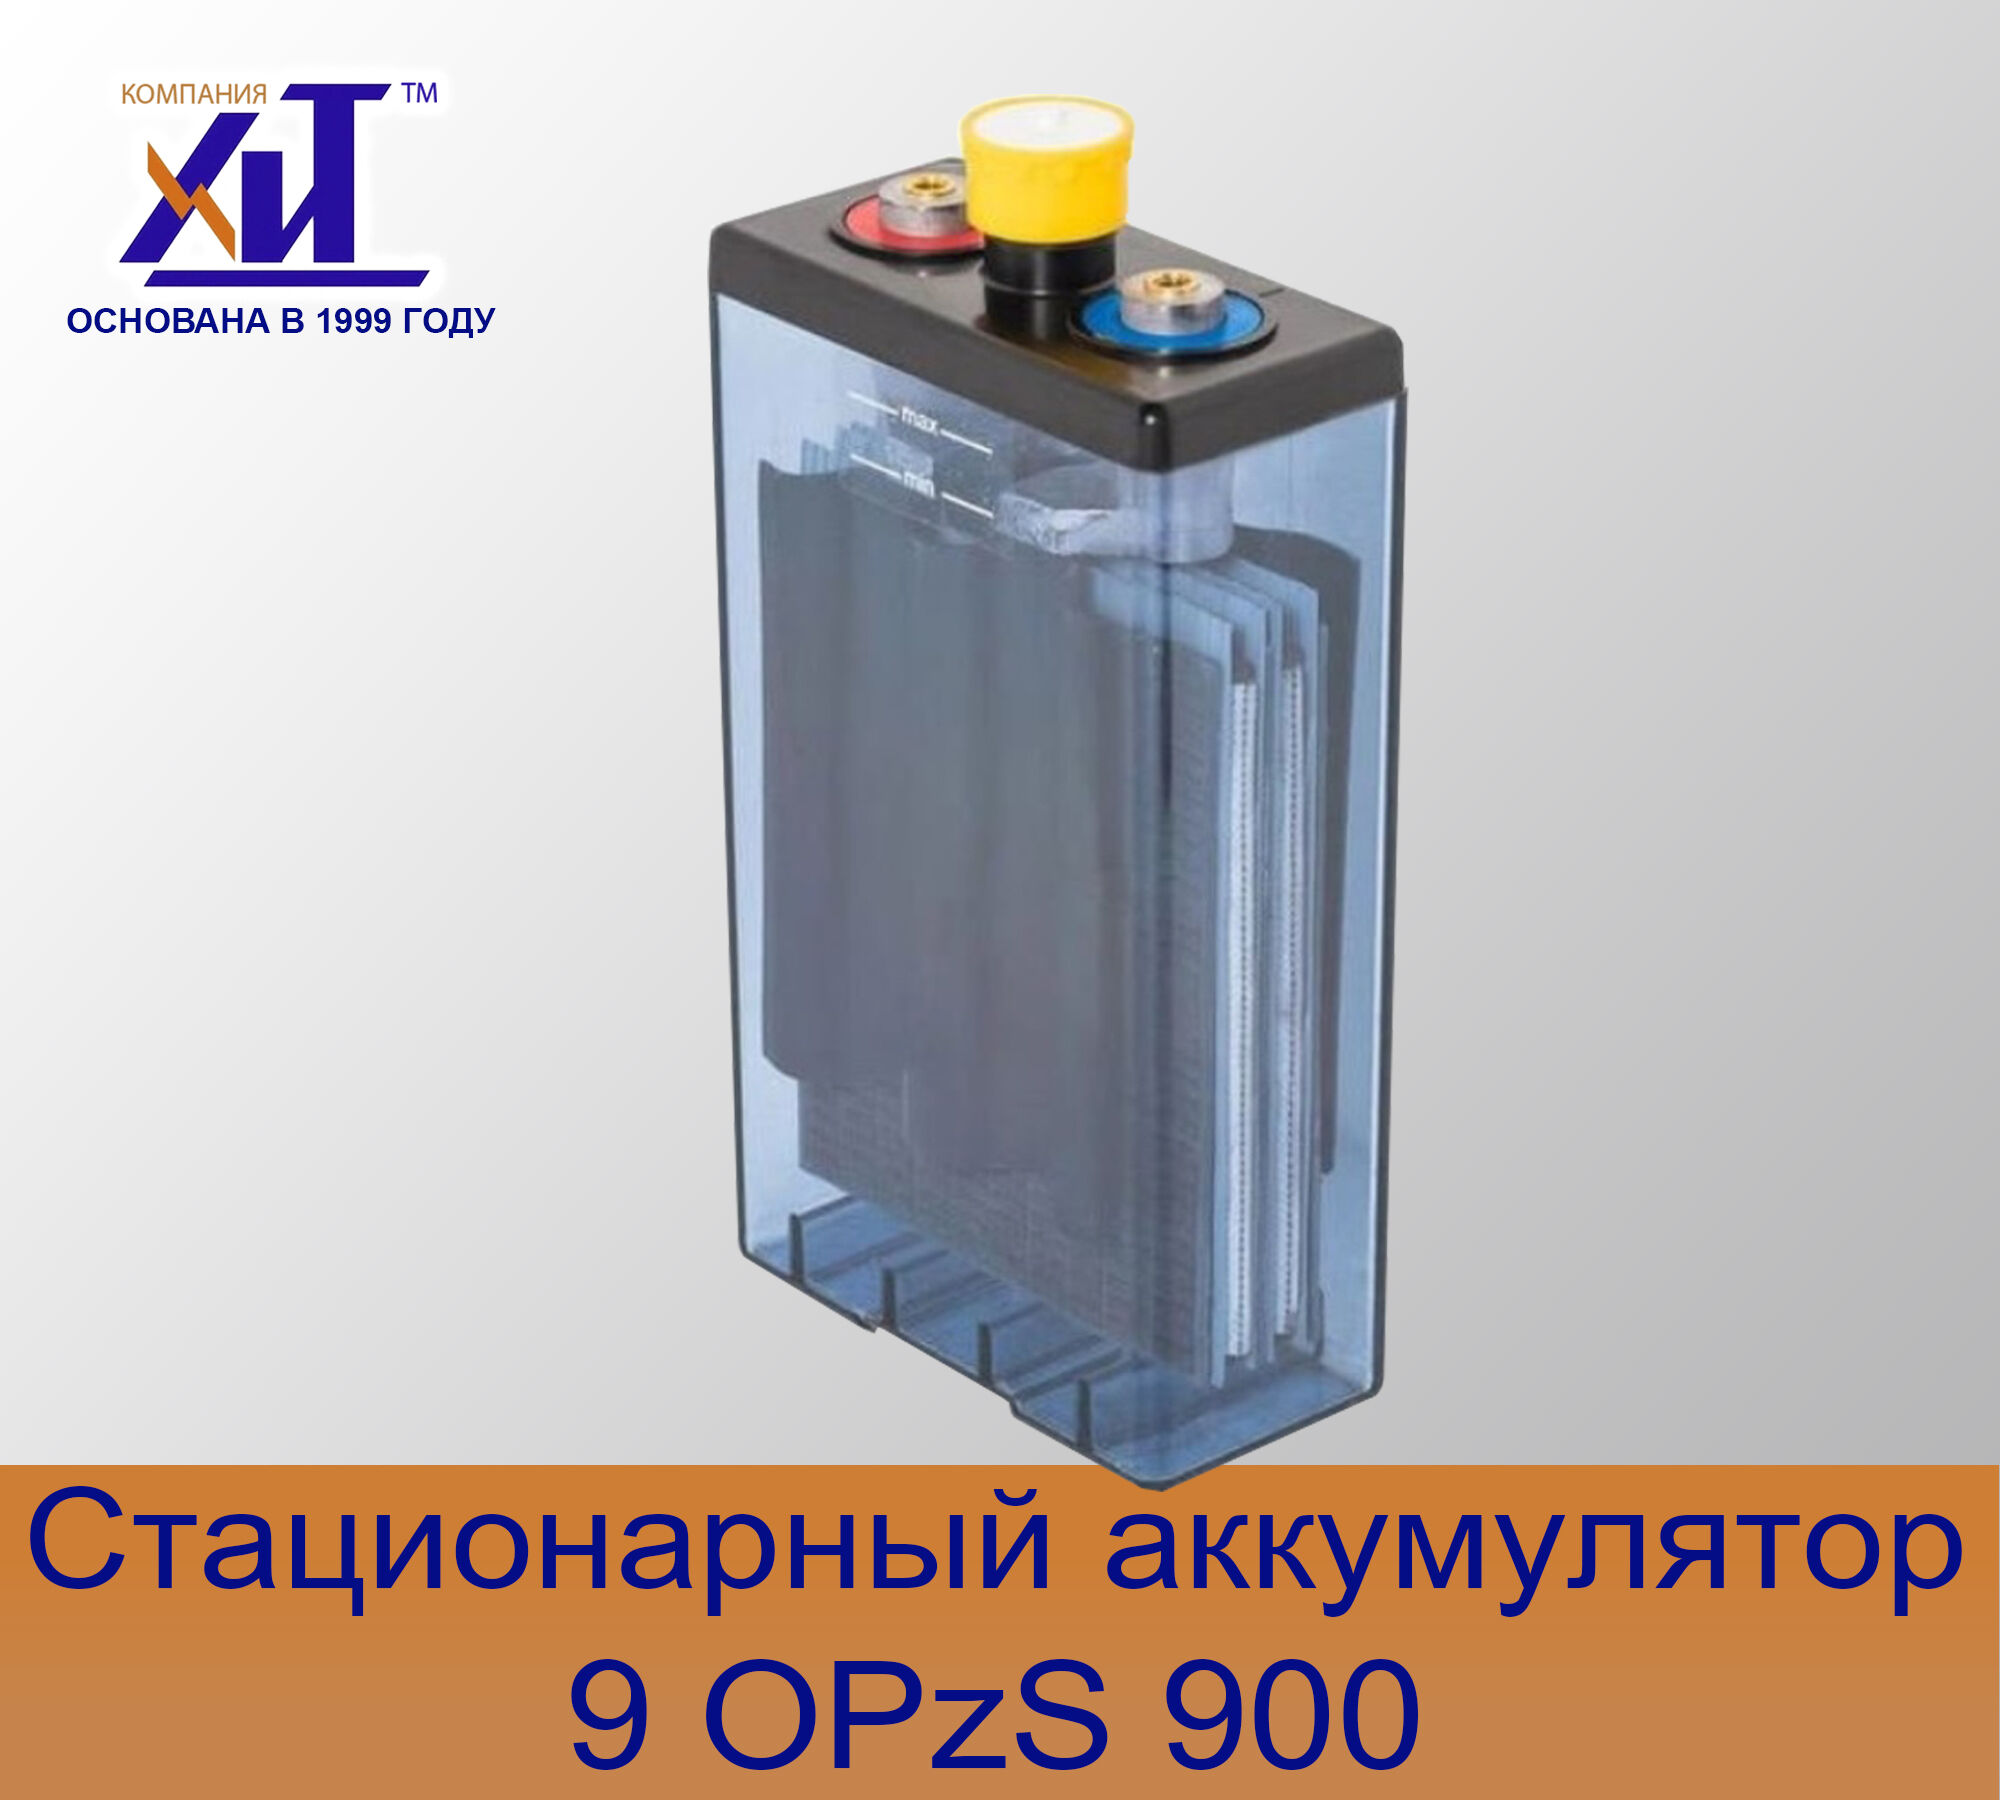 Аккумулятор 9OPzS900